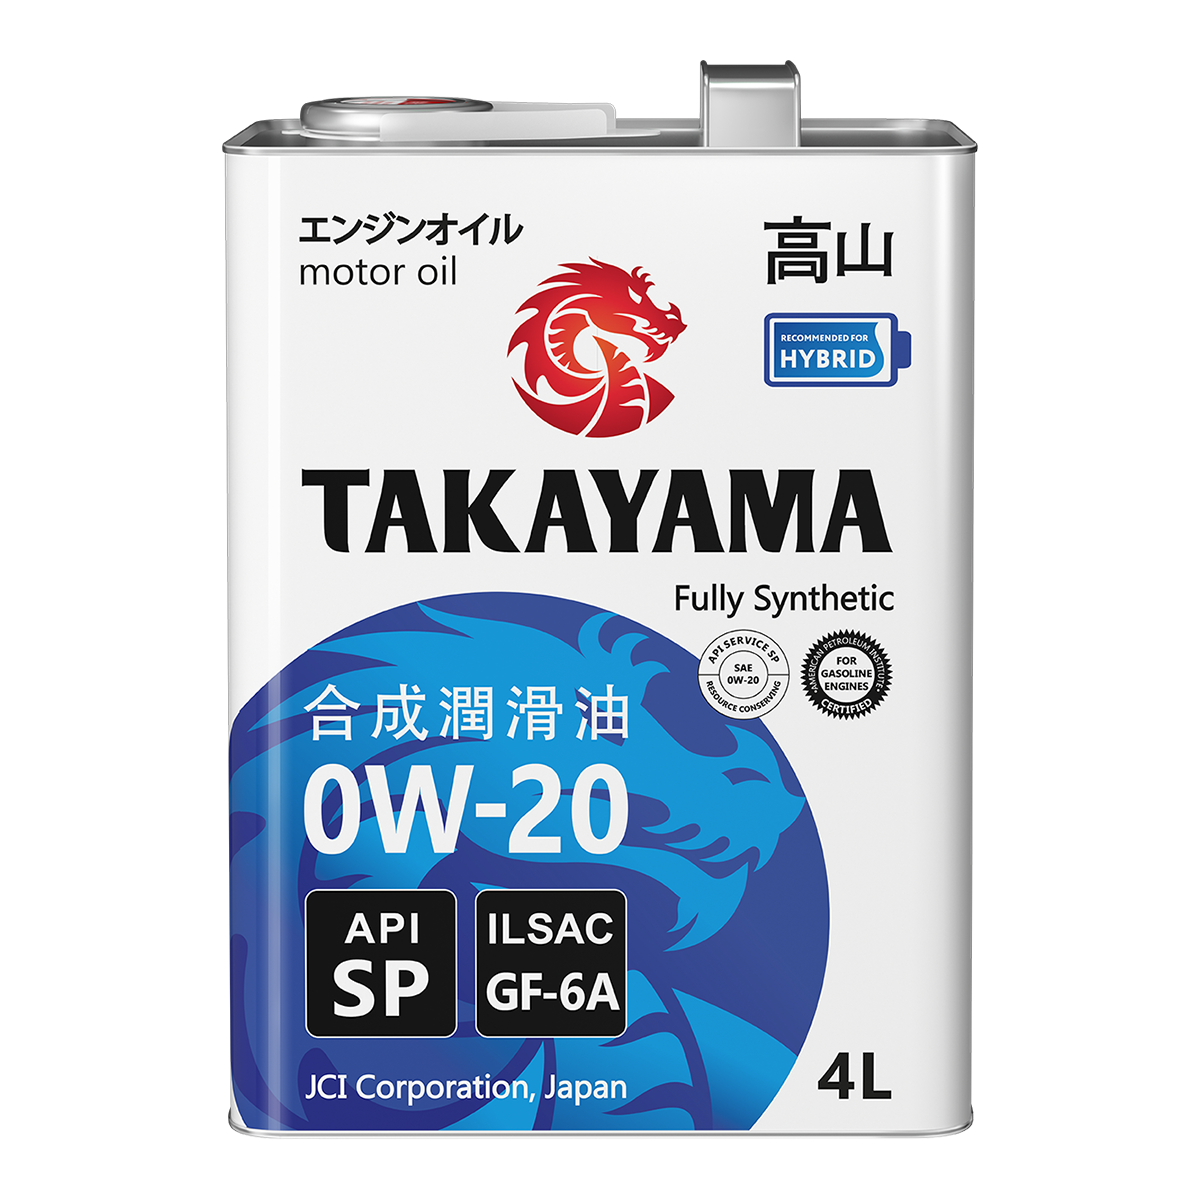 фото Моторное масло takayama sae 0w-20, ilsac gf-6, api sp синтетическое 4л